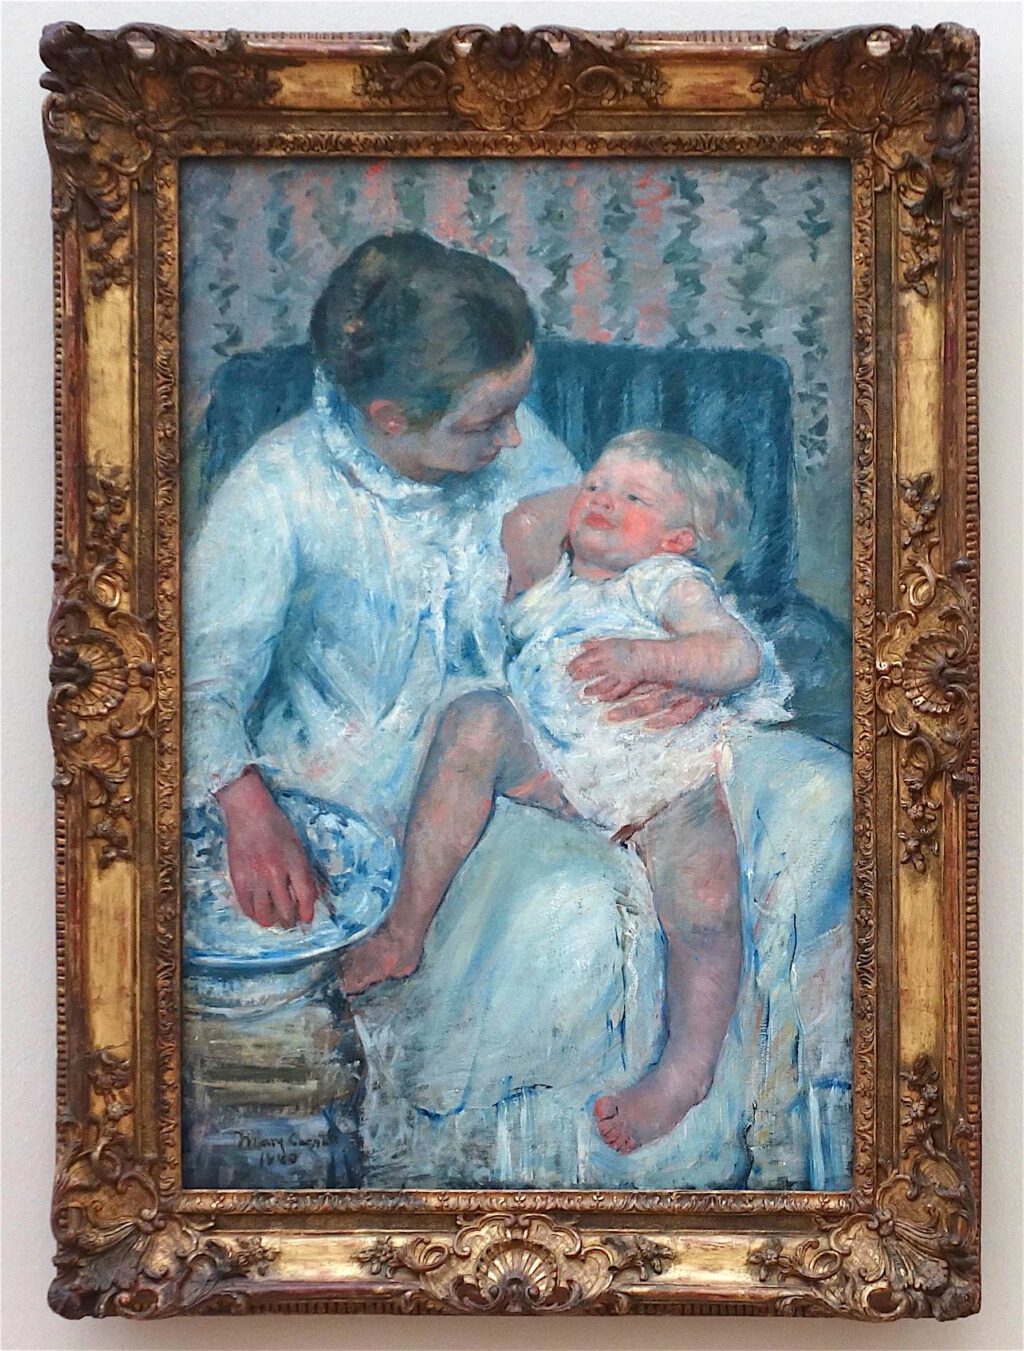 メアリー・カサット「眠っている子供を洗う母親」油絵、100.3 x 65.7 センチ、1880年 (Los Angeles County Museum of Art)